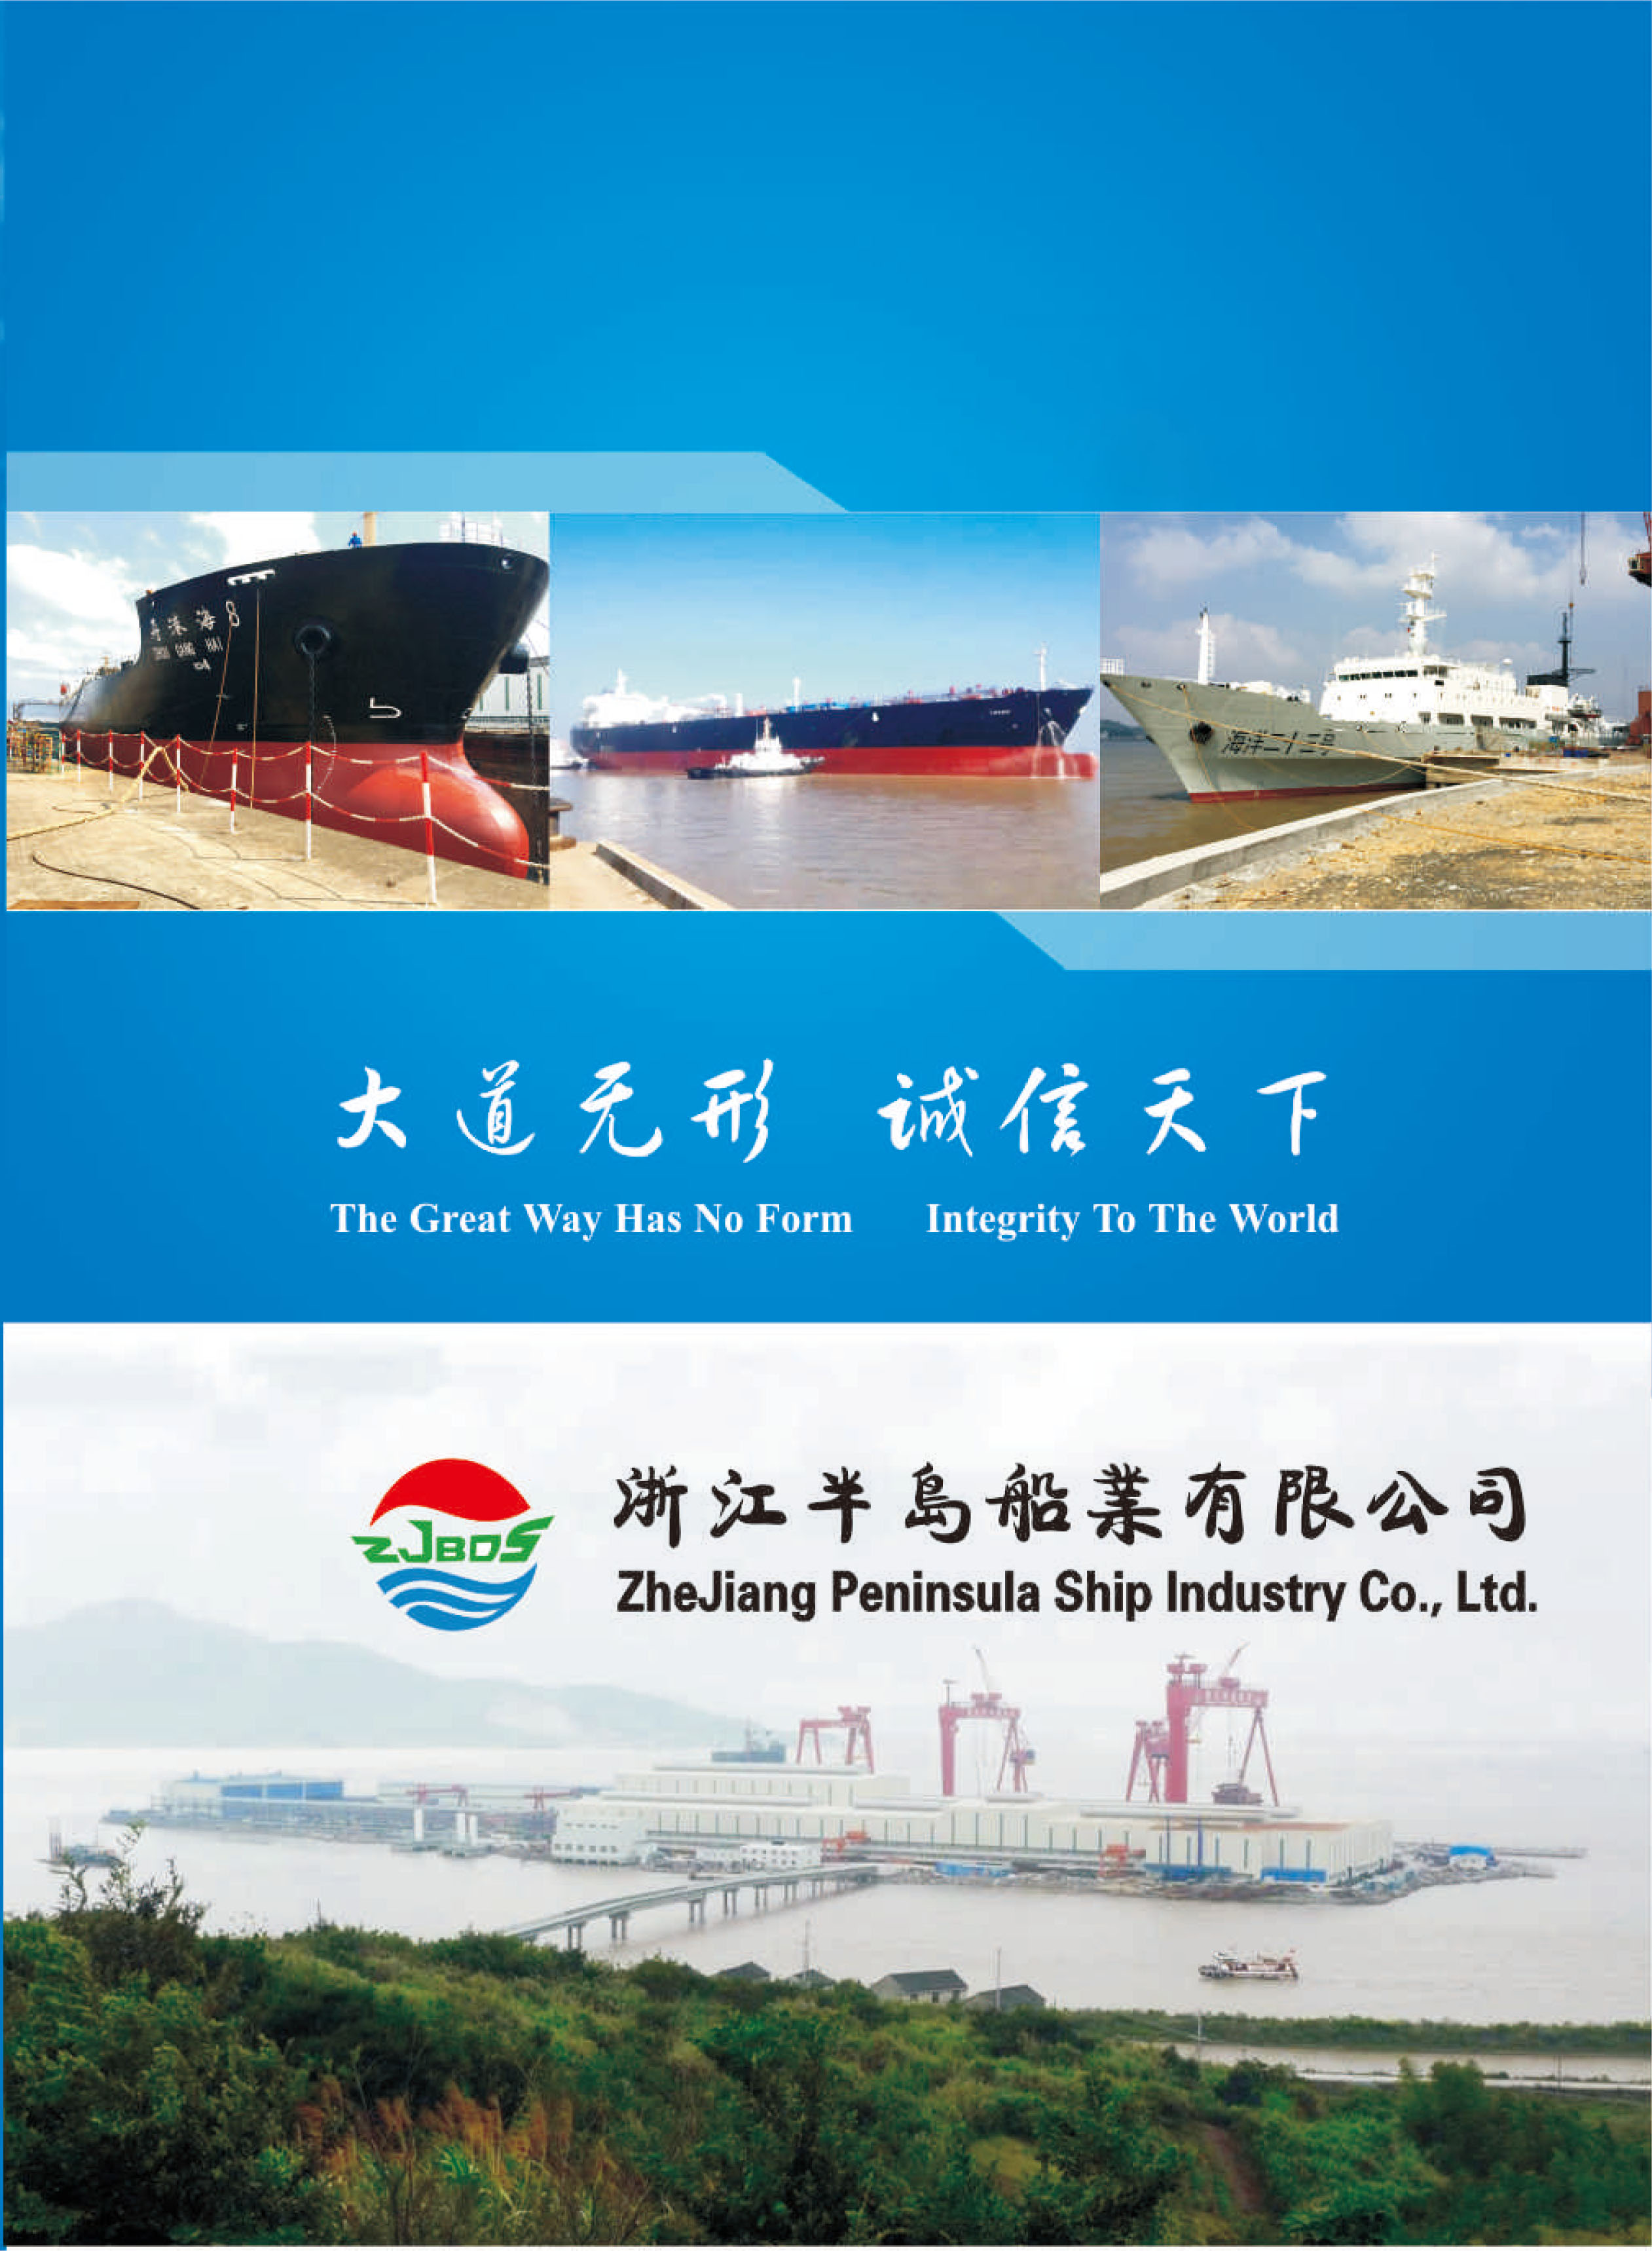 ZheJiang Peninsula Ship Industry Co.，Ltd(图1)